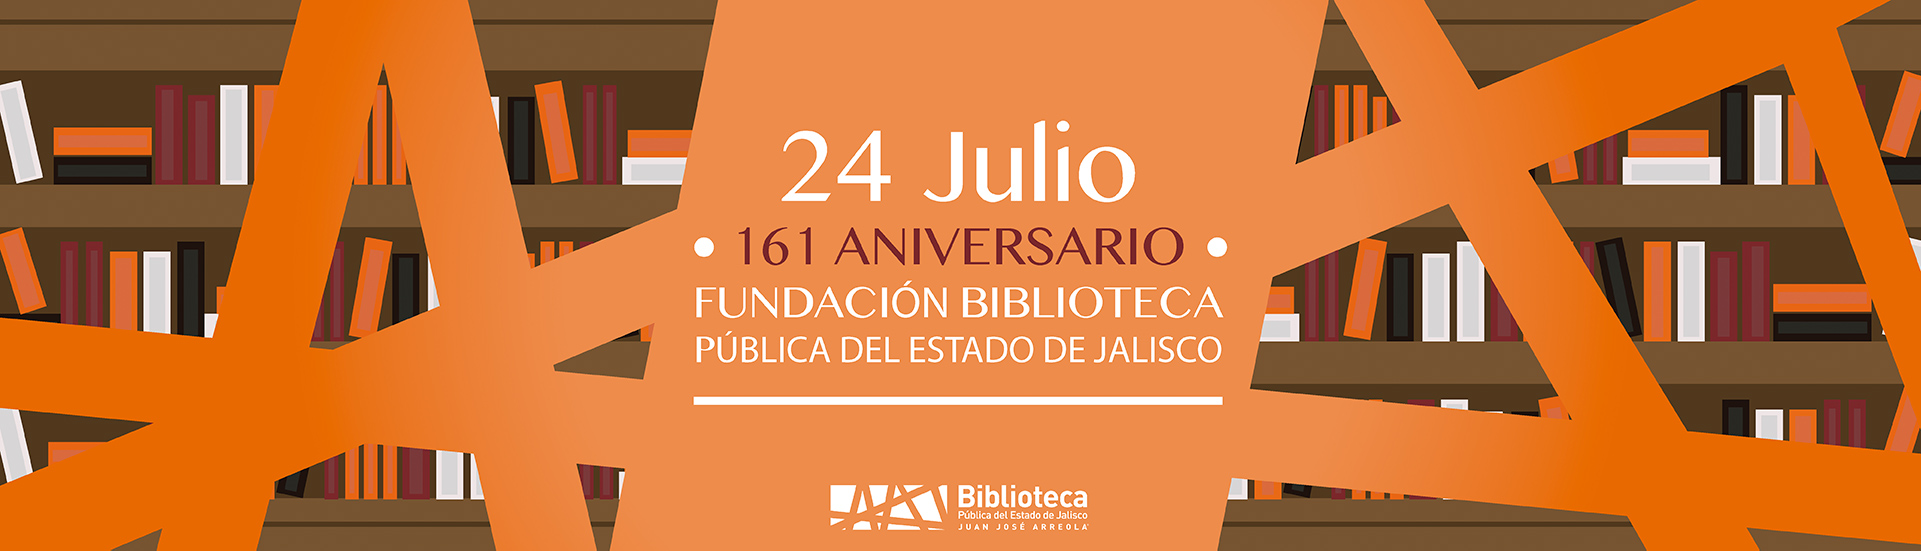 24 de Julio, 161 Aniversario de la Biblioteca Publica del estado.